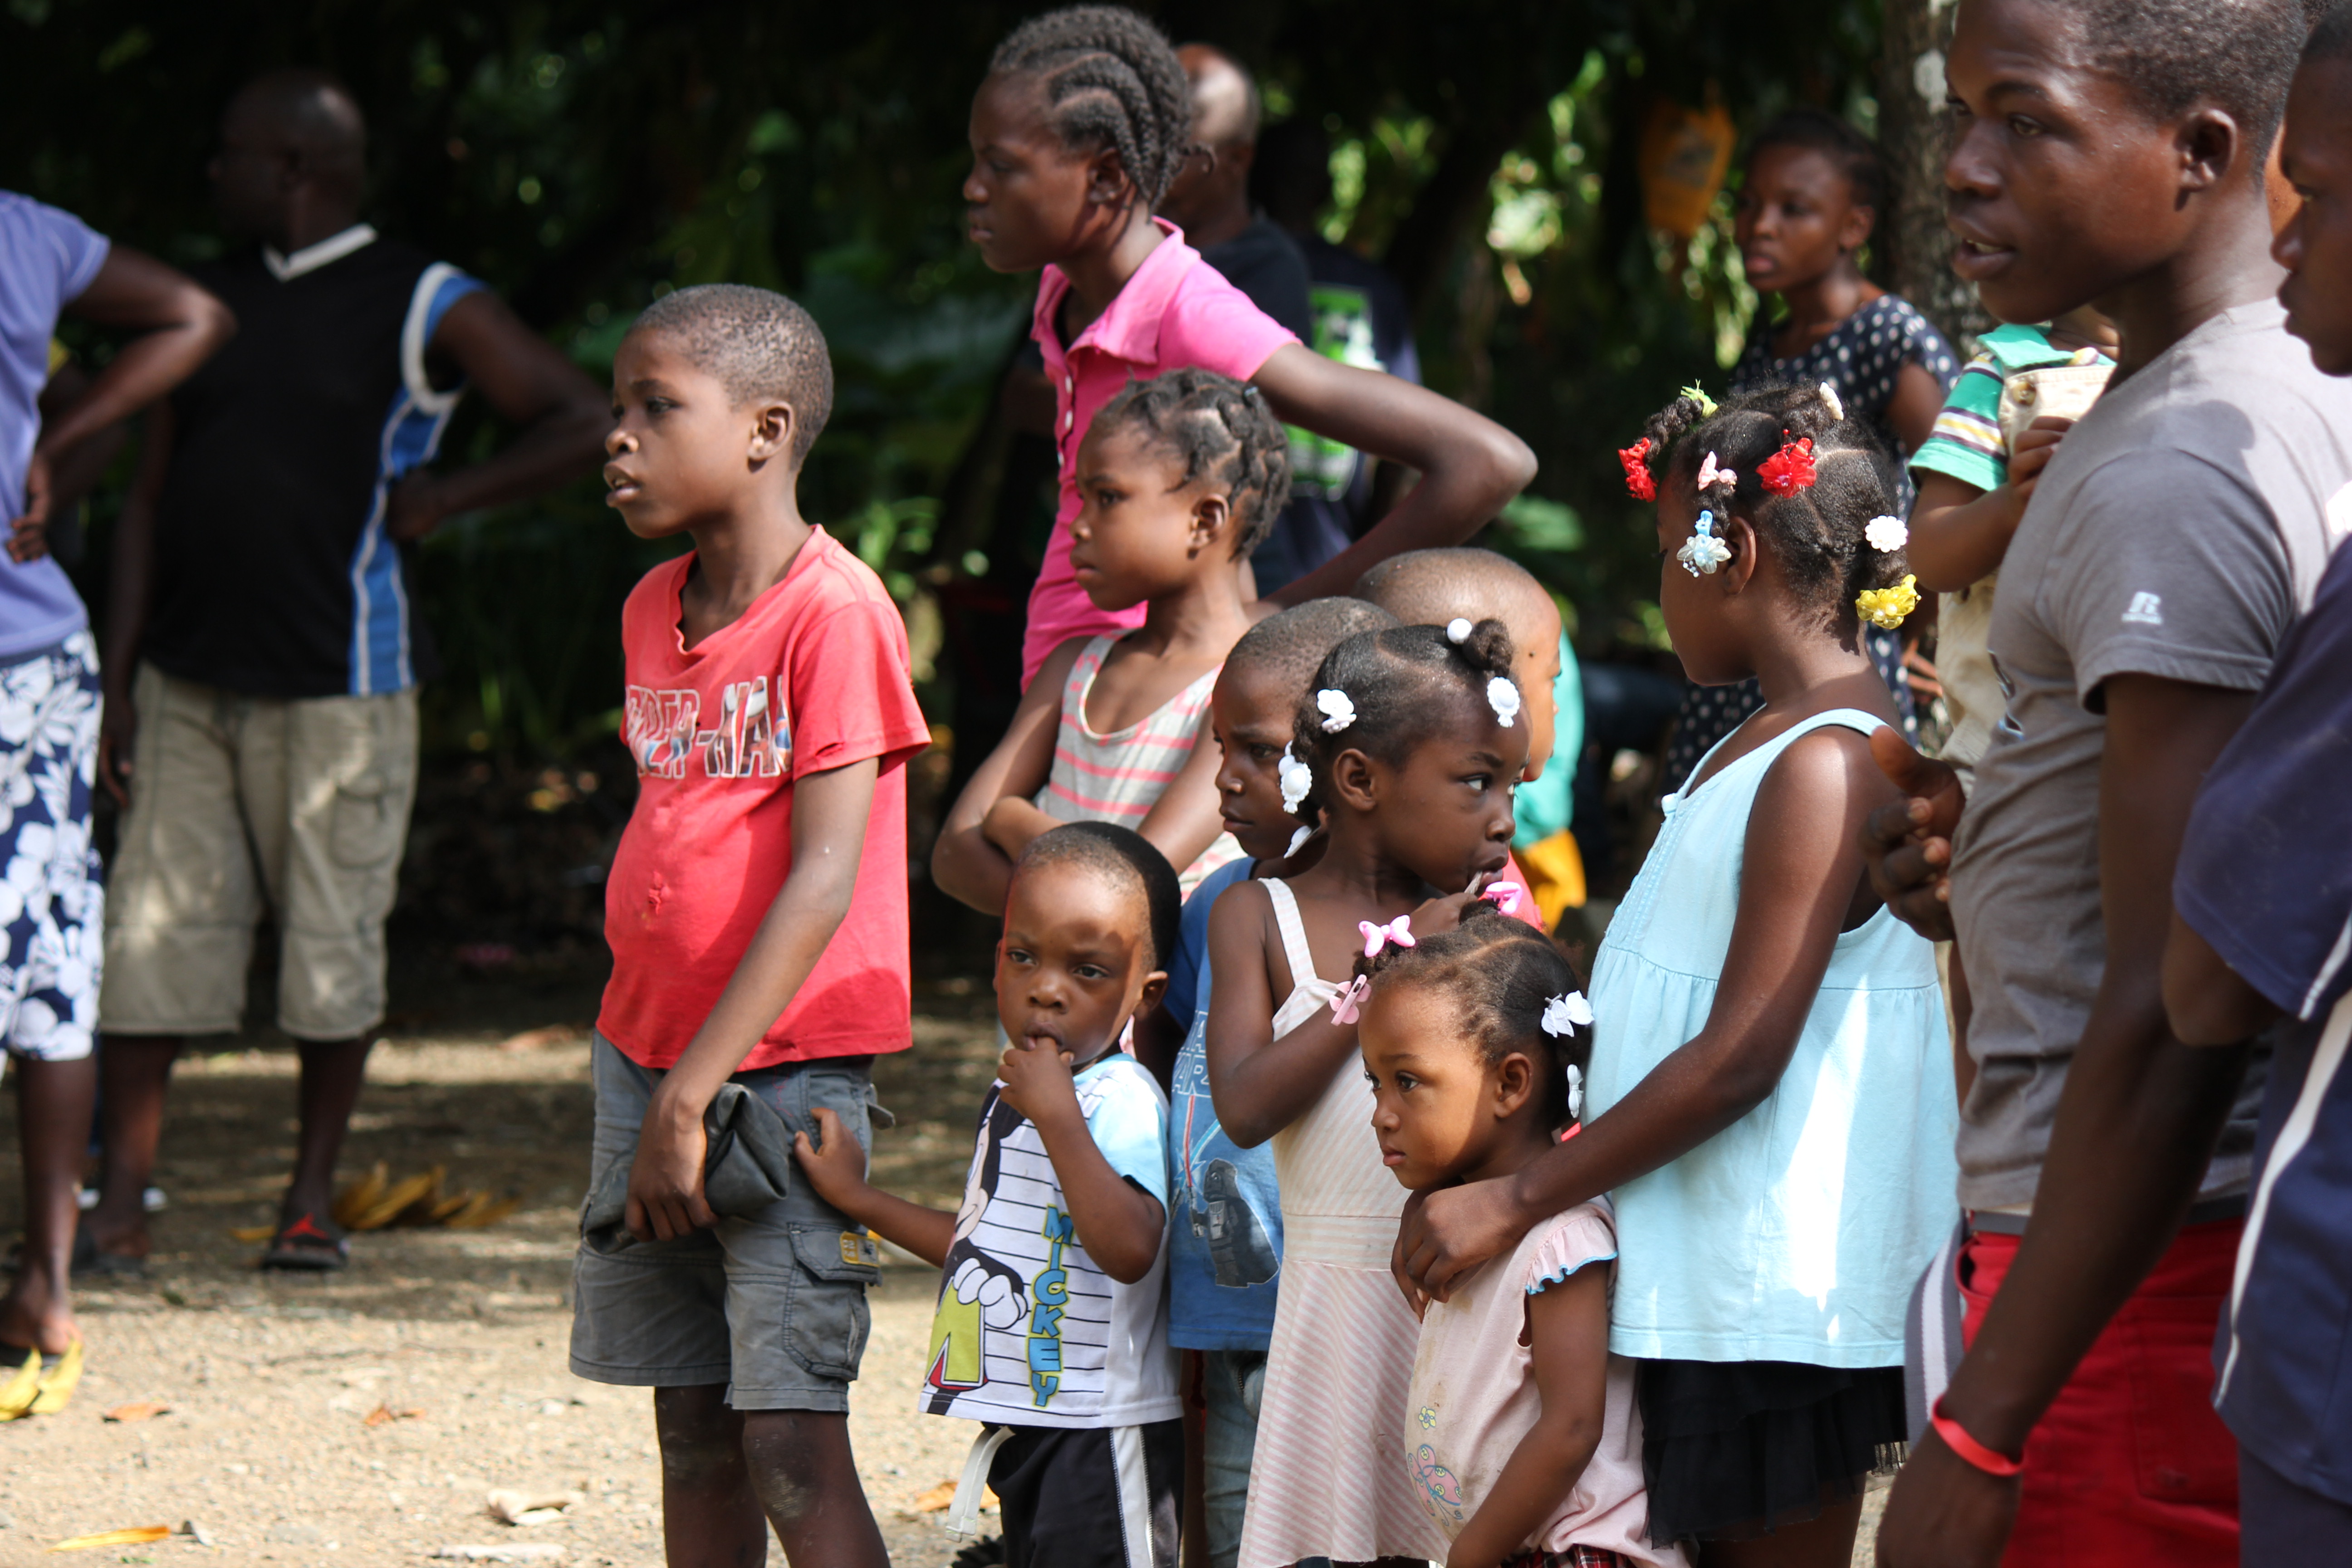 Village Children watching the well being drilled